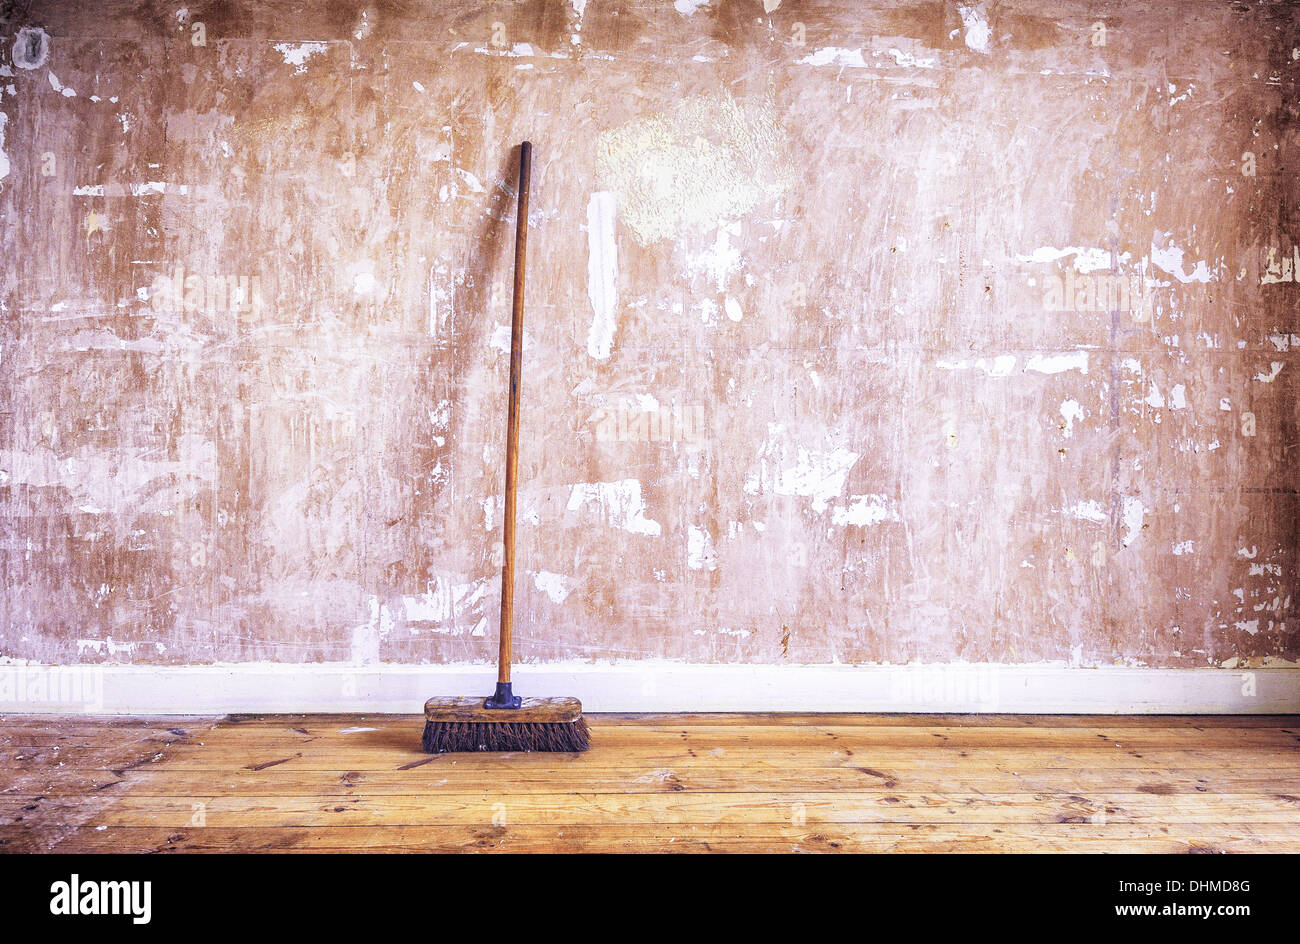 Une brosse en bois (genêt) appuyé contre un mur de plâtre de gypse (dénudé) au cours de la décoration rénovation d'amélioration Banque D'Images